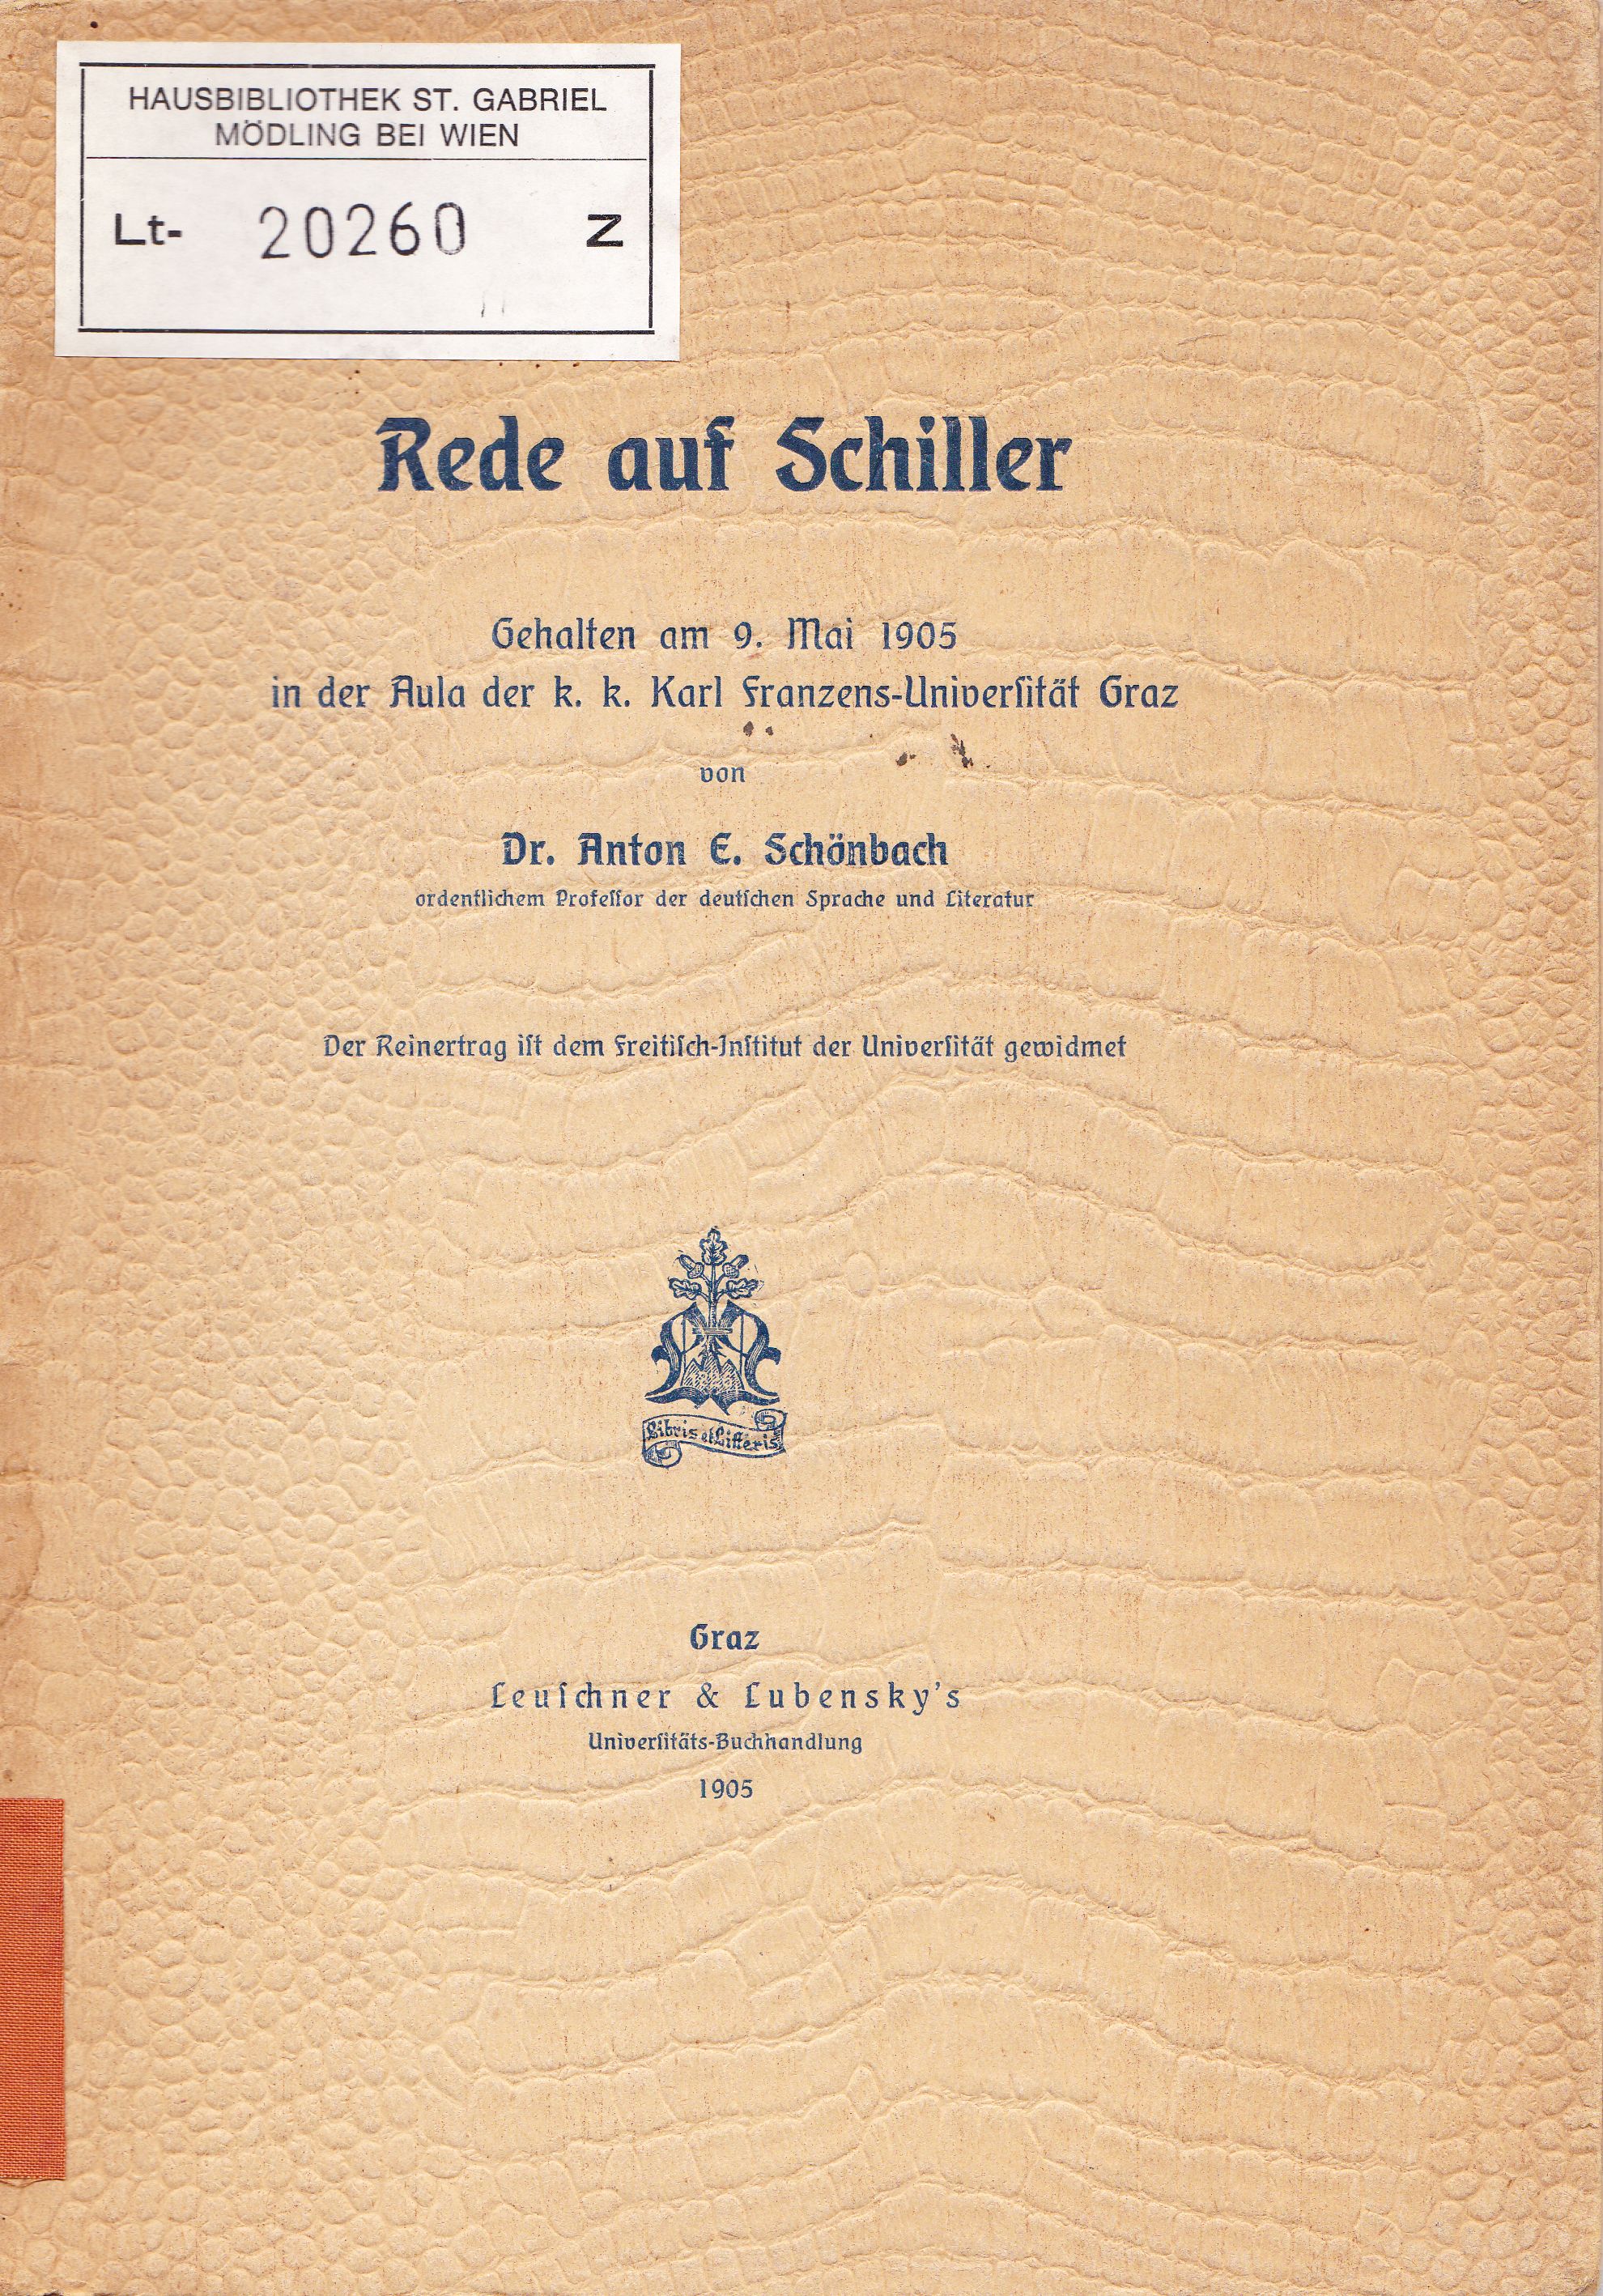 Schönbach, Anton E.  Rede auf Schiller. Gehalten am 9. Mai 1905 in der Aula der k. k. Karl Franzens-Universität Graz. 